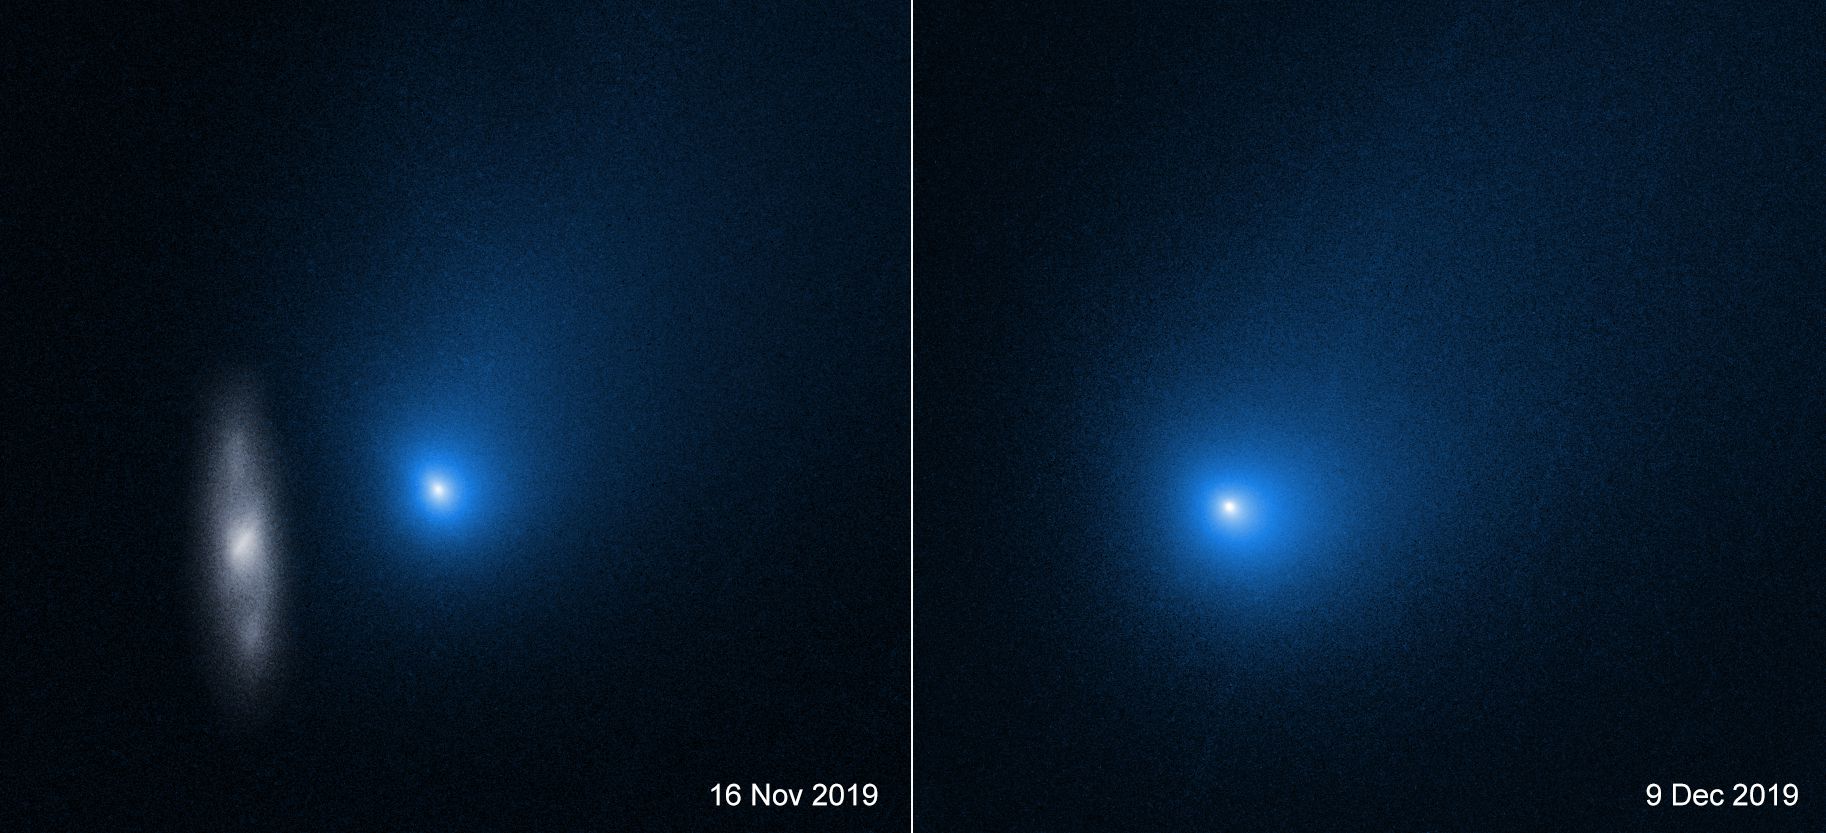  Interstellar Comet 2I/Borisov 